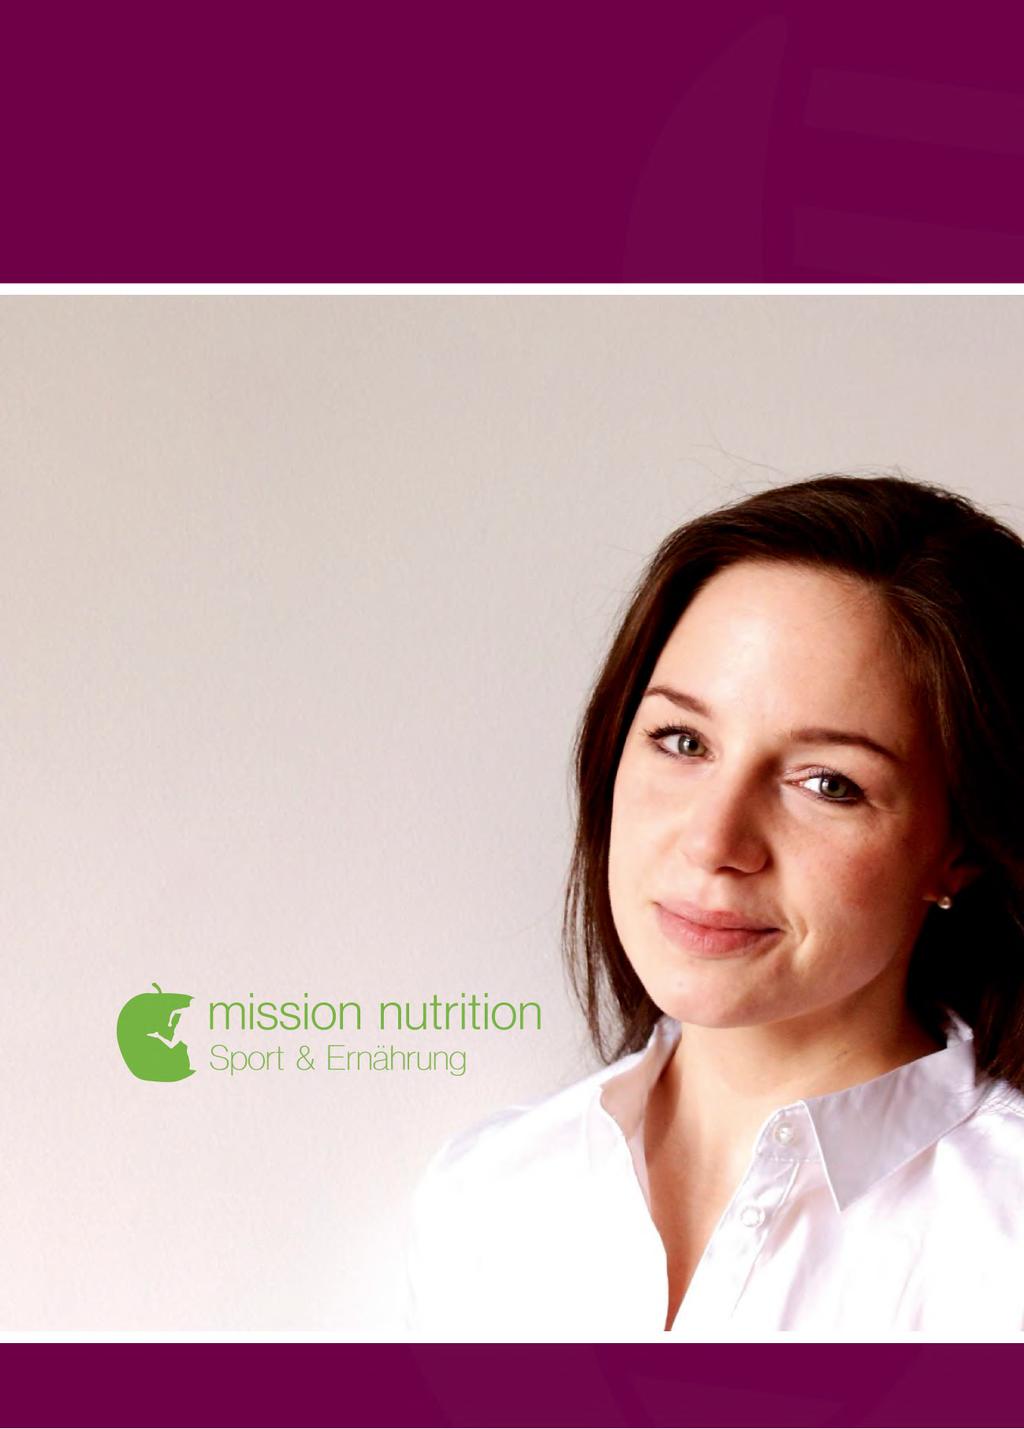 - Trebate dodatni savjet? Za dodatne konzultacije putem telefona ili Skype-a možemo Vam preporučiti prehrambenog savjetnika, gđu. Mariellu Schmid iz Mission Nutrition.